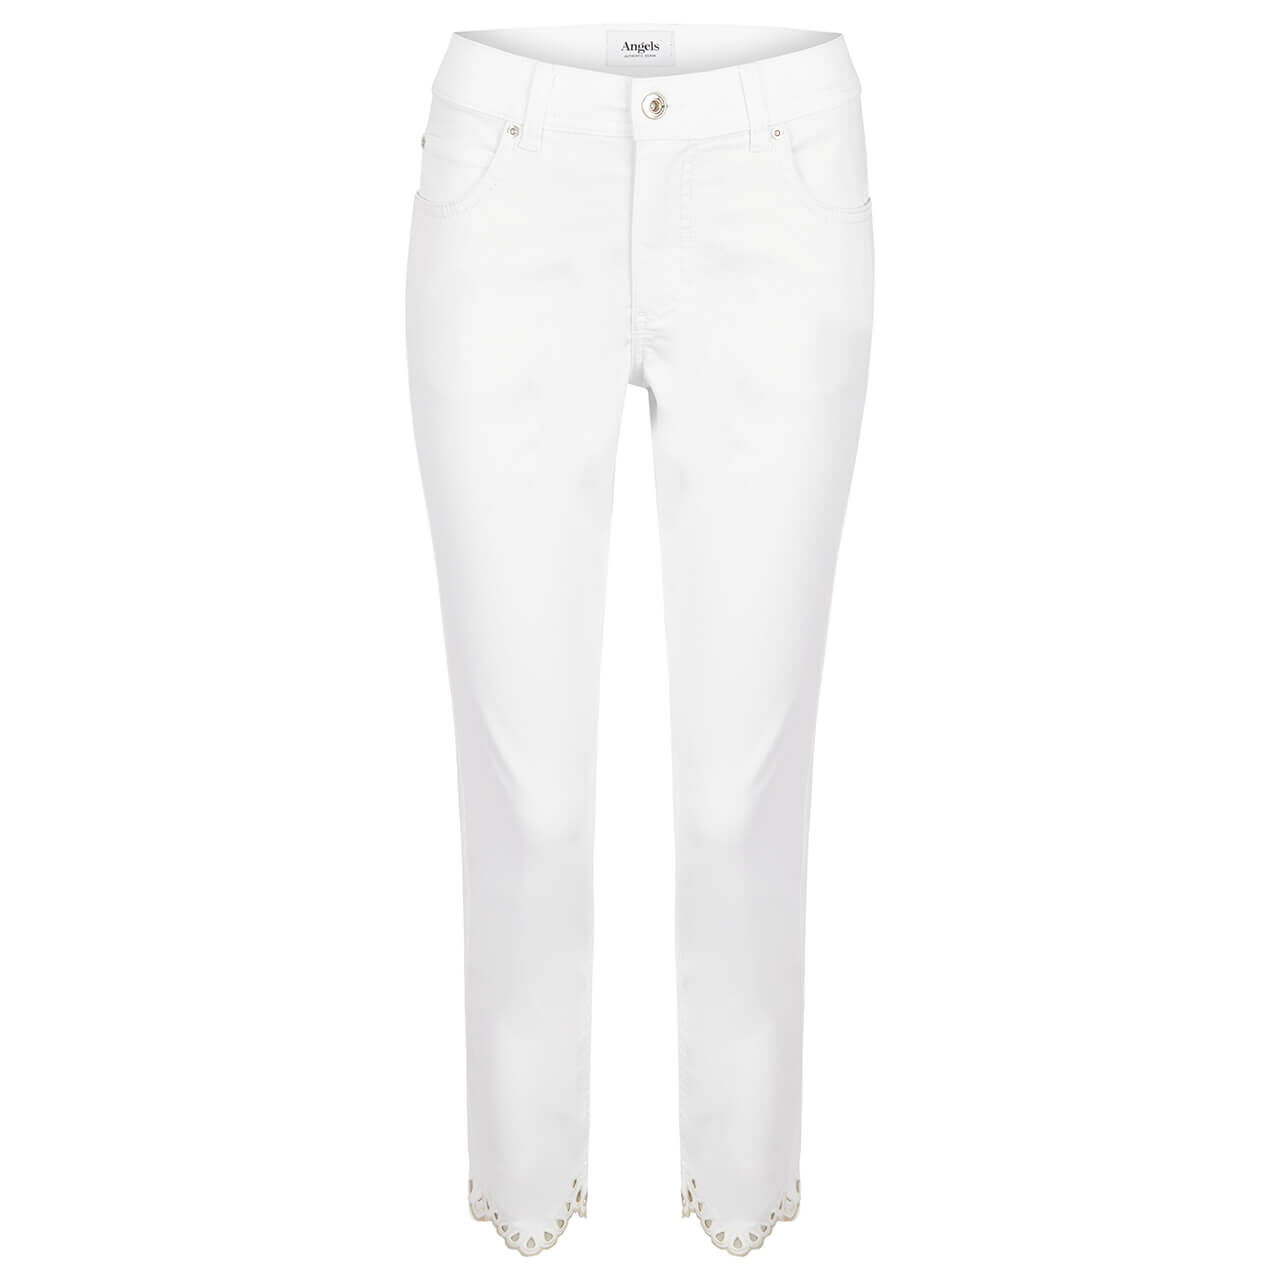 Angels Jeans Ornella Bloom 7/8 für Damen in Weiß, FarbNr.: 70